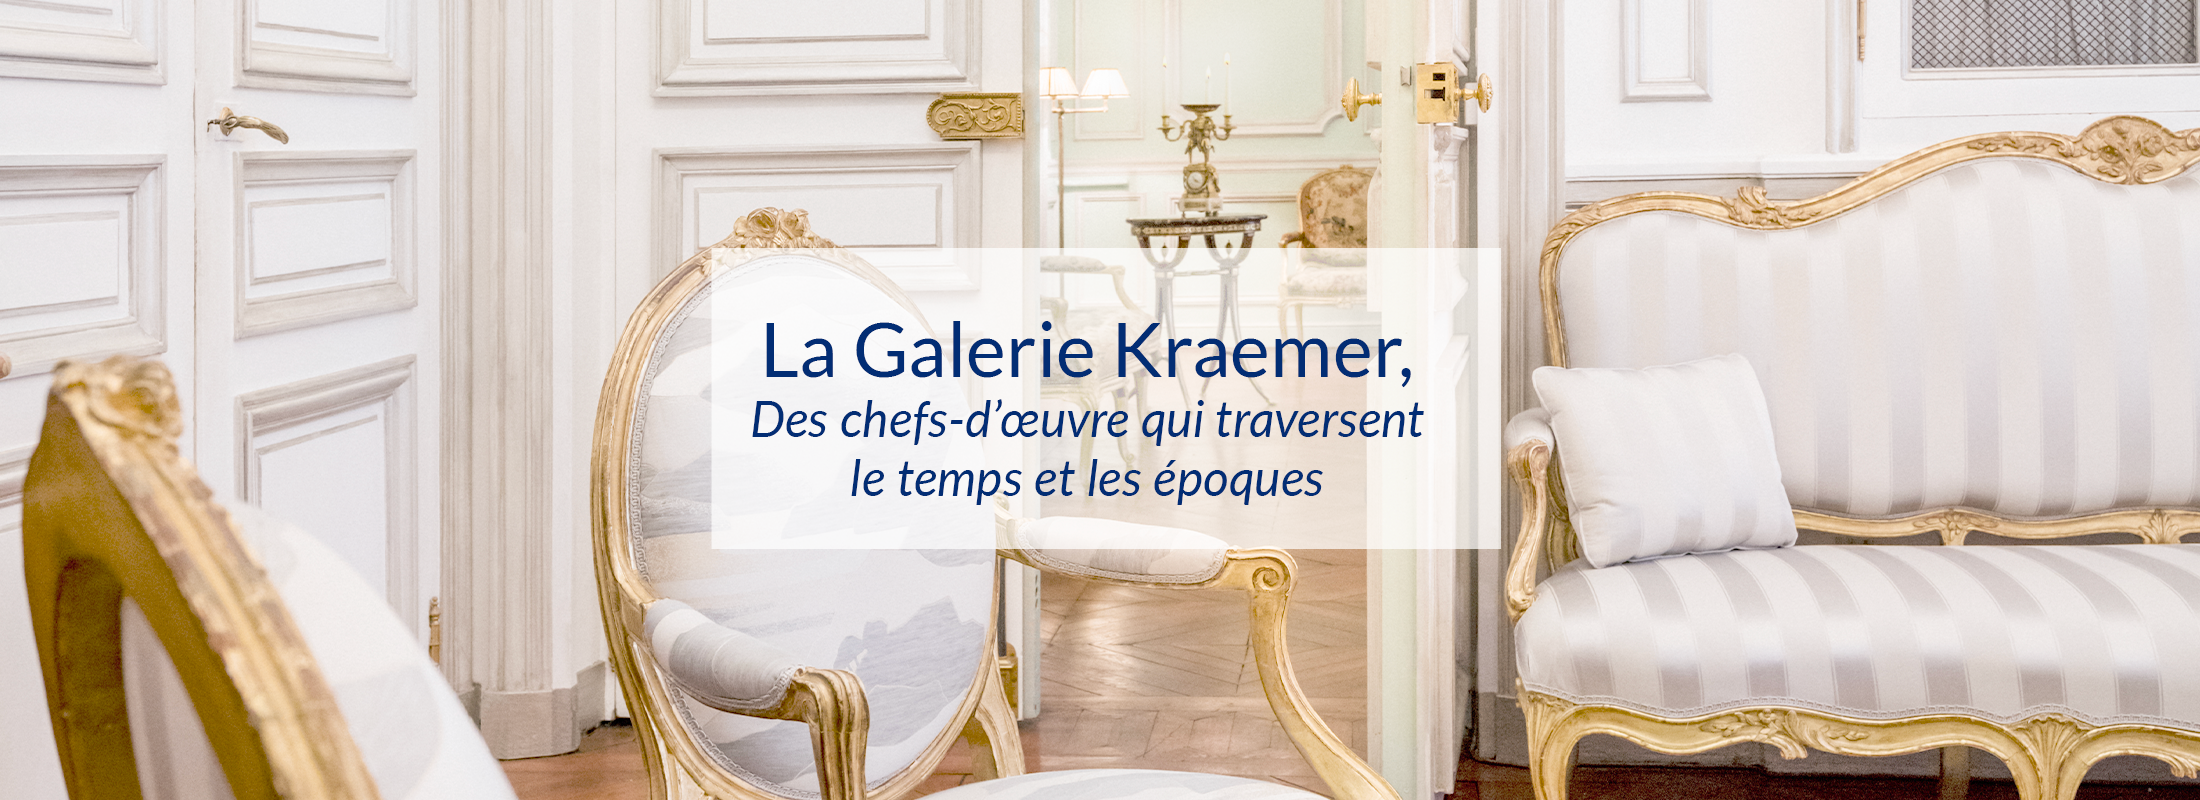 La Galerie Kraemer, Des chefs-d’œuvre qui traversent le temps et les époques